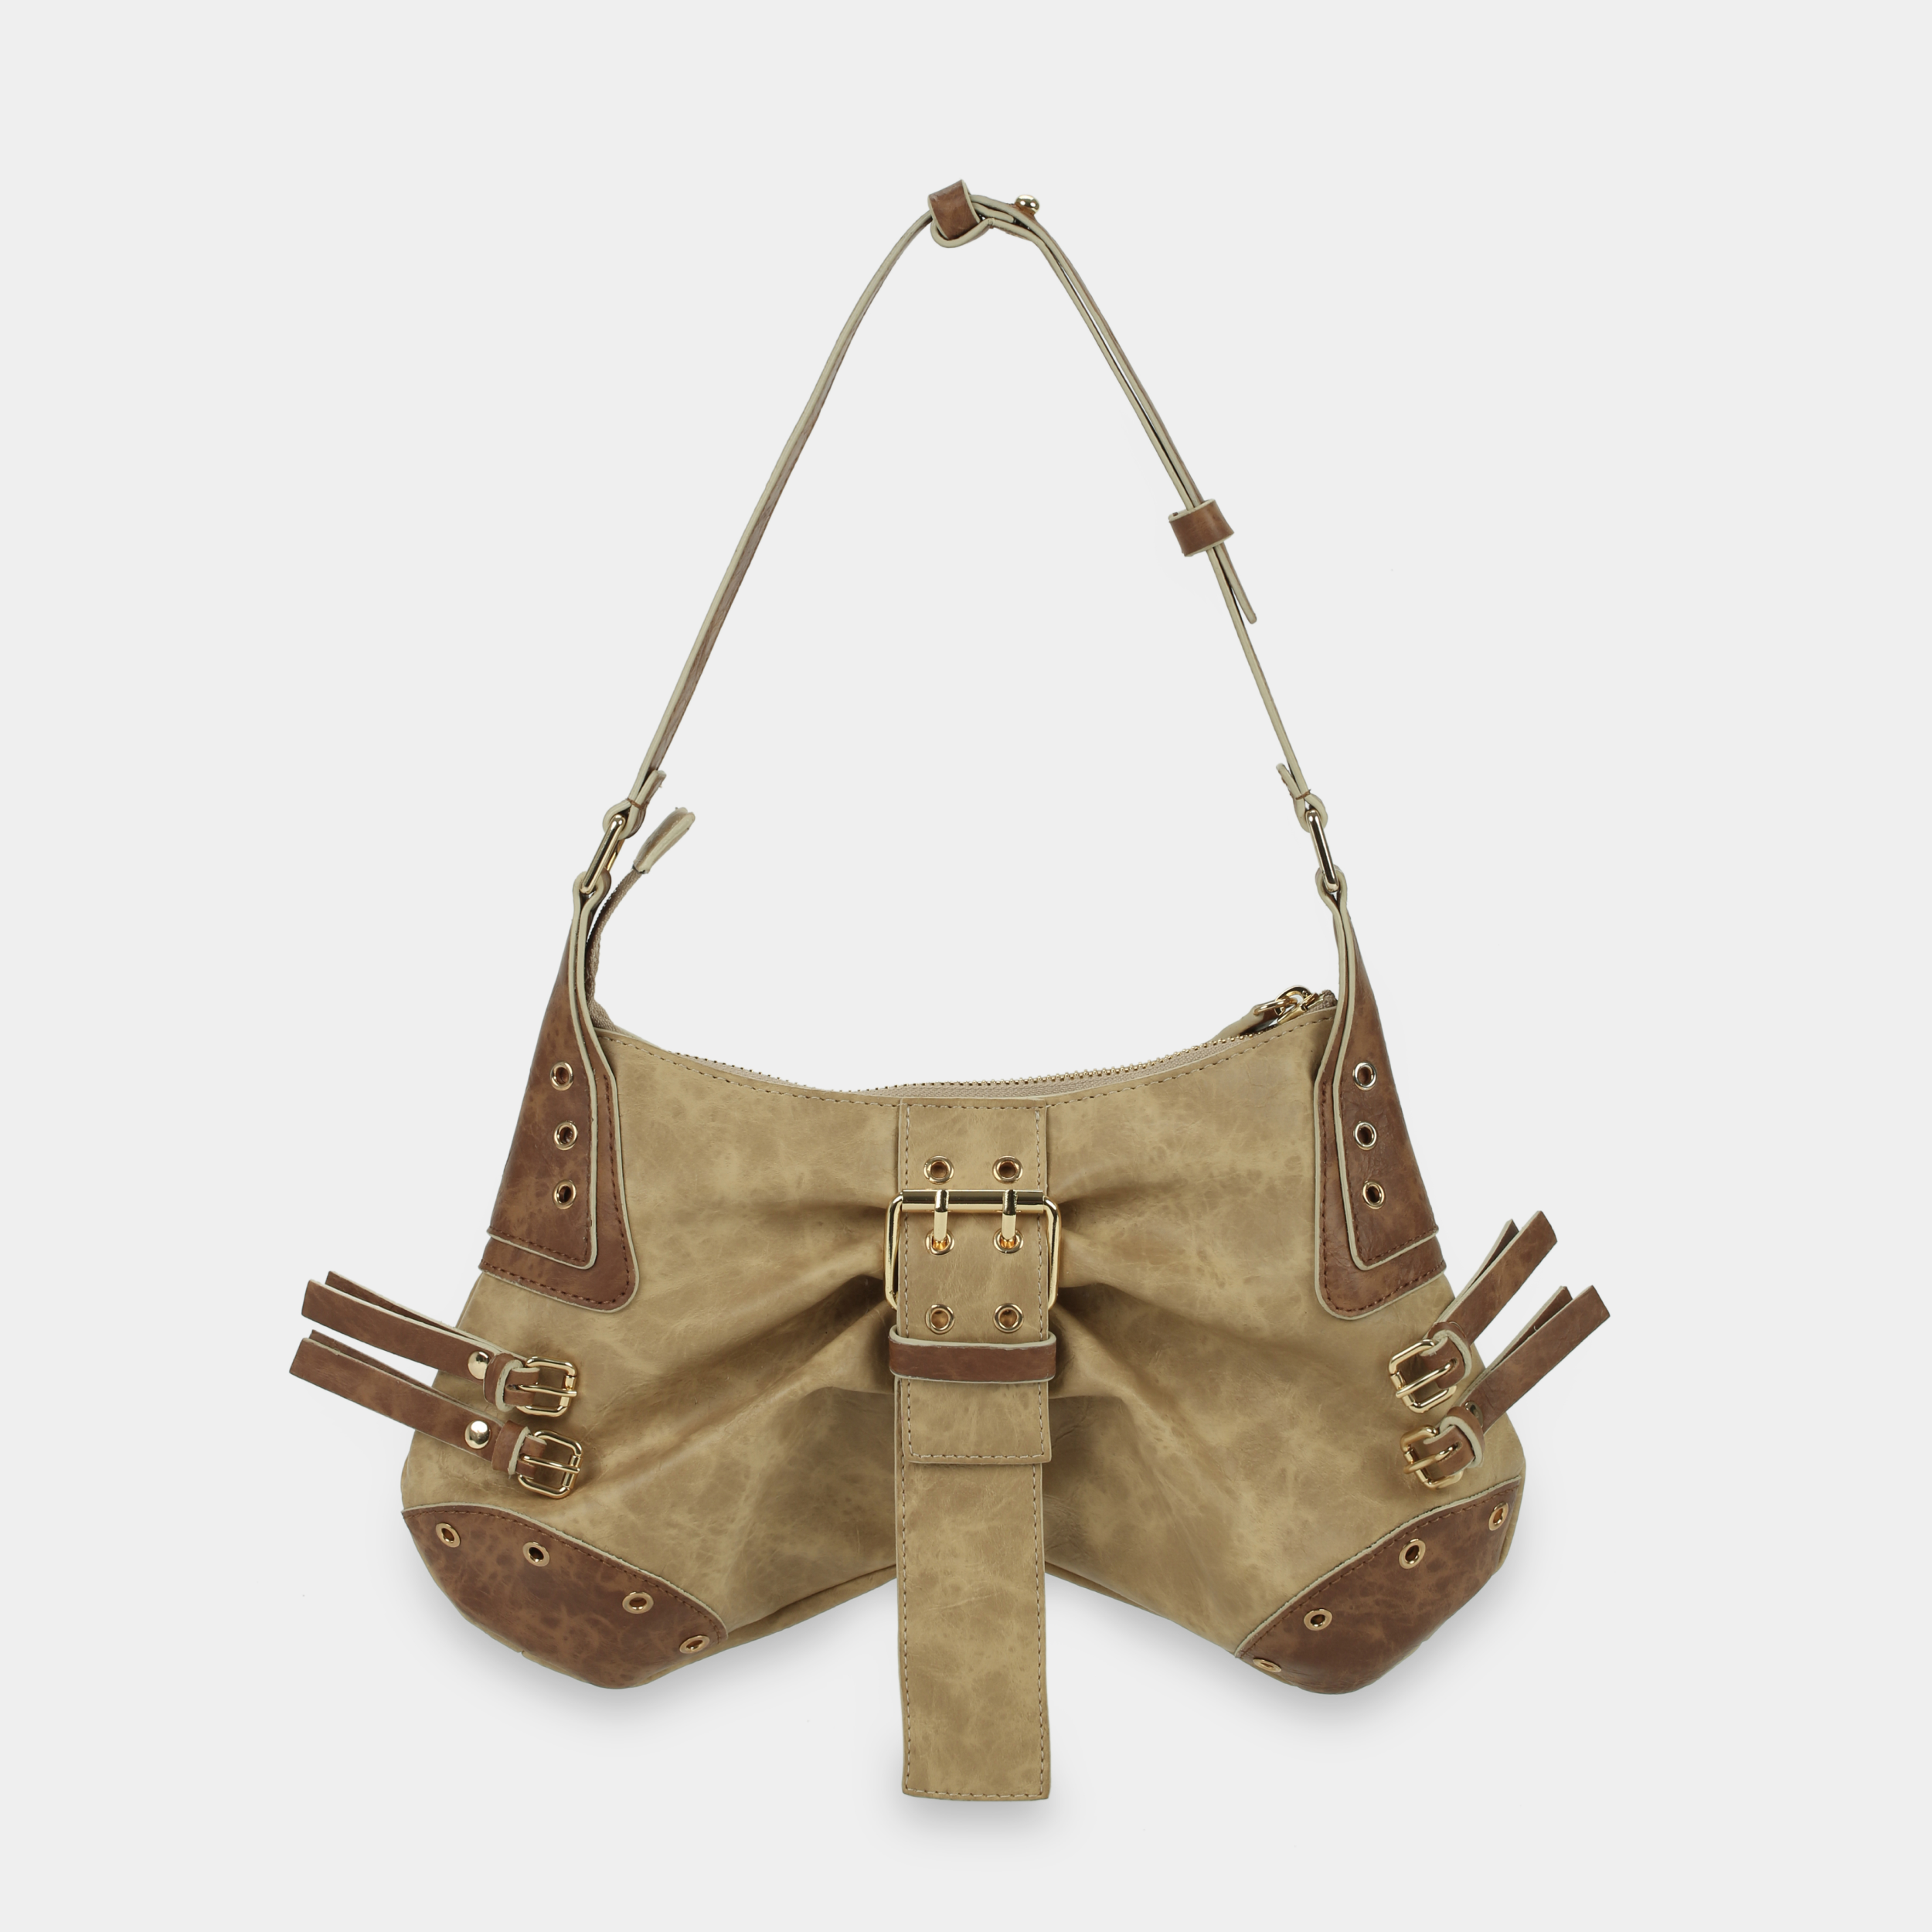 BUTTERFLY Handbag in Beige x Brown